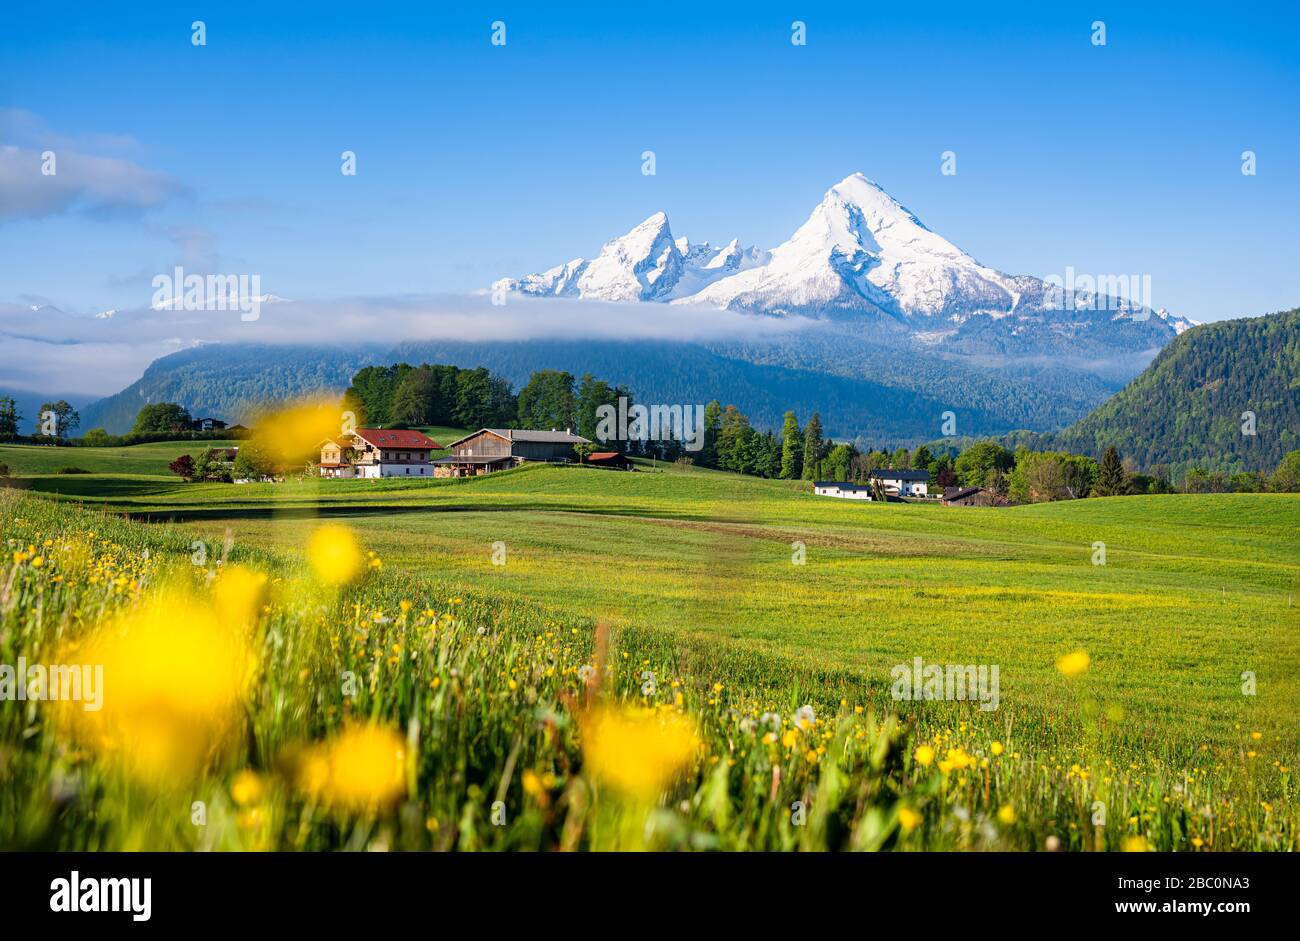 Vista panorámica panorámica del idílico paisaje alpino de montaña con coloridas praderas en flor y hermosos picos nevados en mística niebla Foto de stock